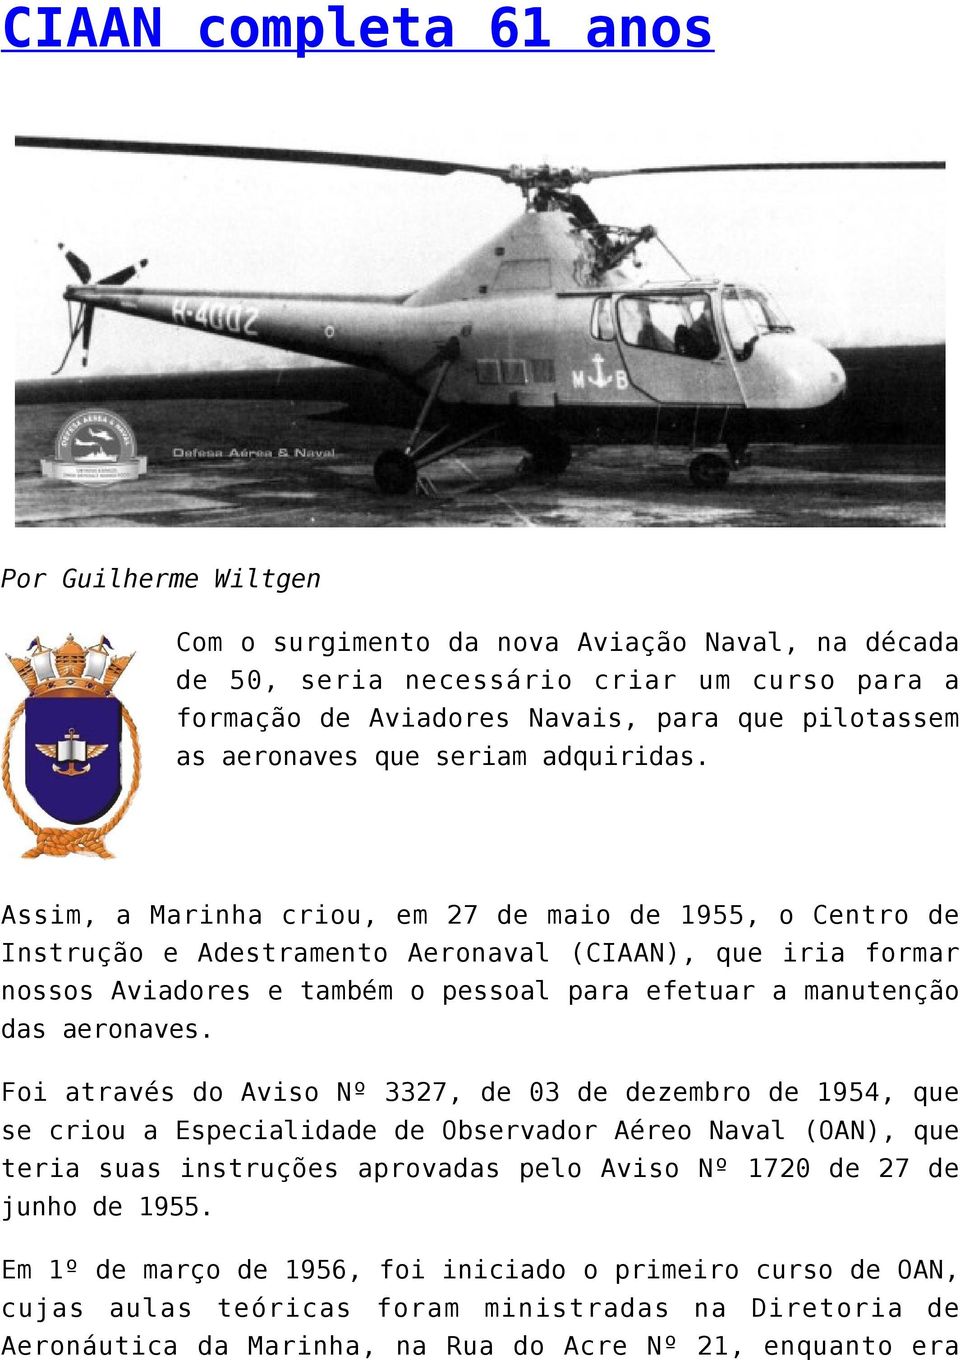 Assim, a Marinha criou, em 27 de maio de 1955, o Centro de Instrução e Adestramento Aeronaval (CIAAN), que iria formar nossos Aviadores e também o pessoal para efetuar a manutenção das aeronaves.